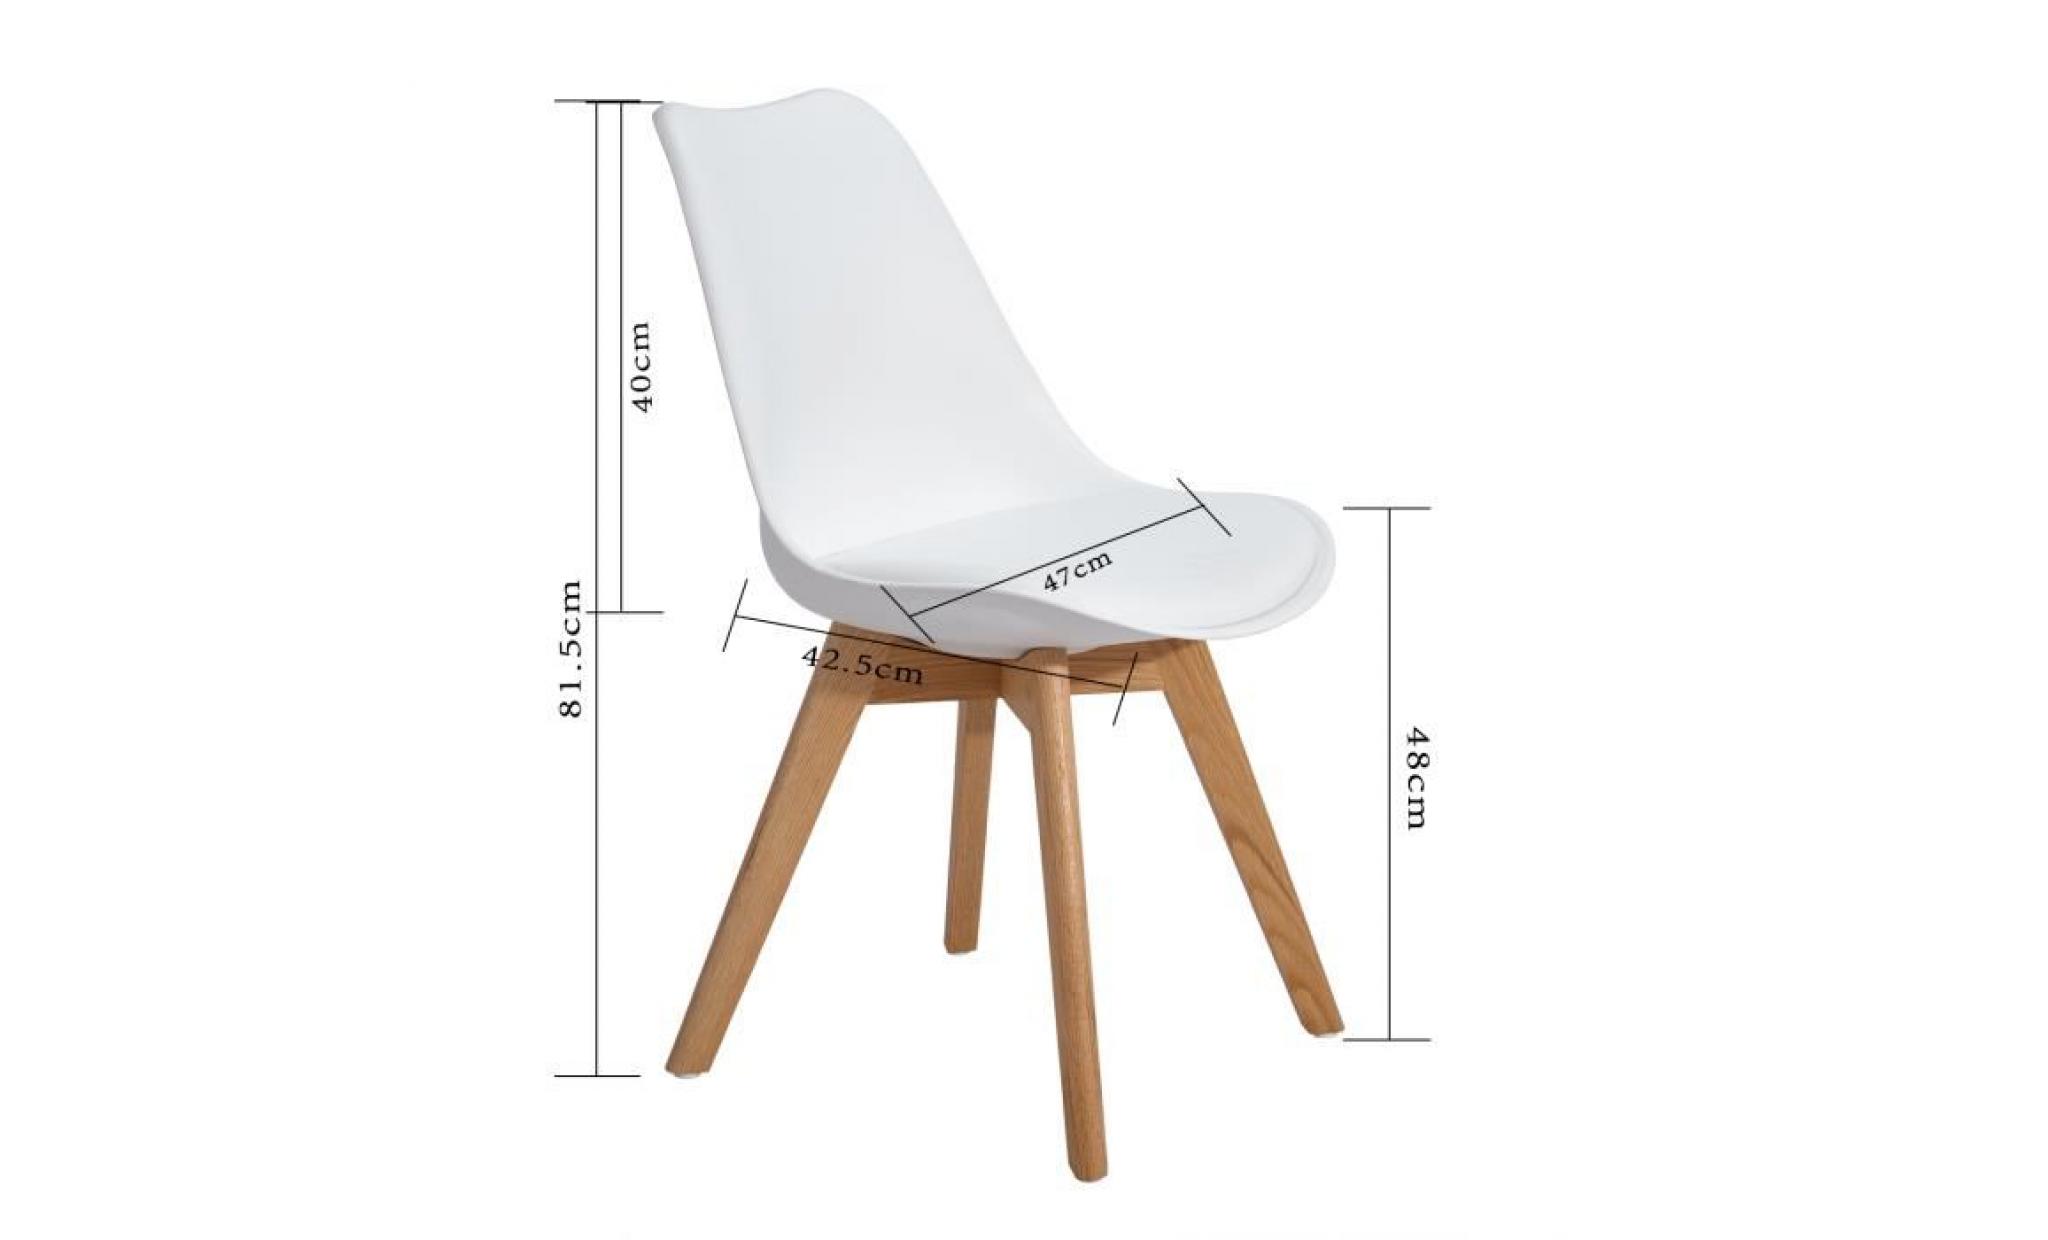 lot of 4 meubles chaises design contemporain nordique scandinave blanc  chaise pas cher